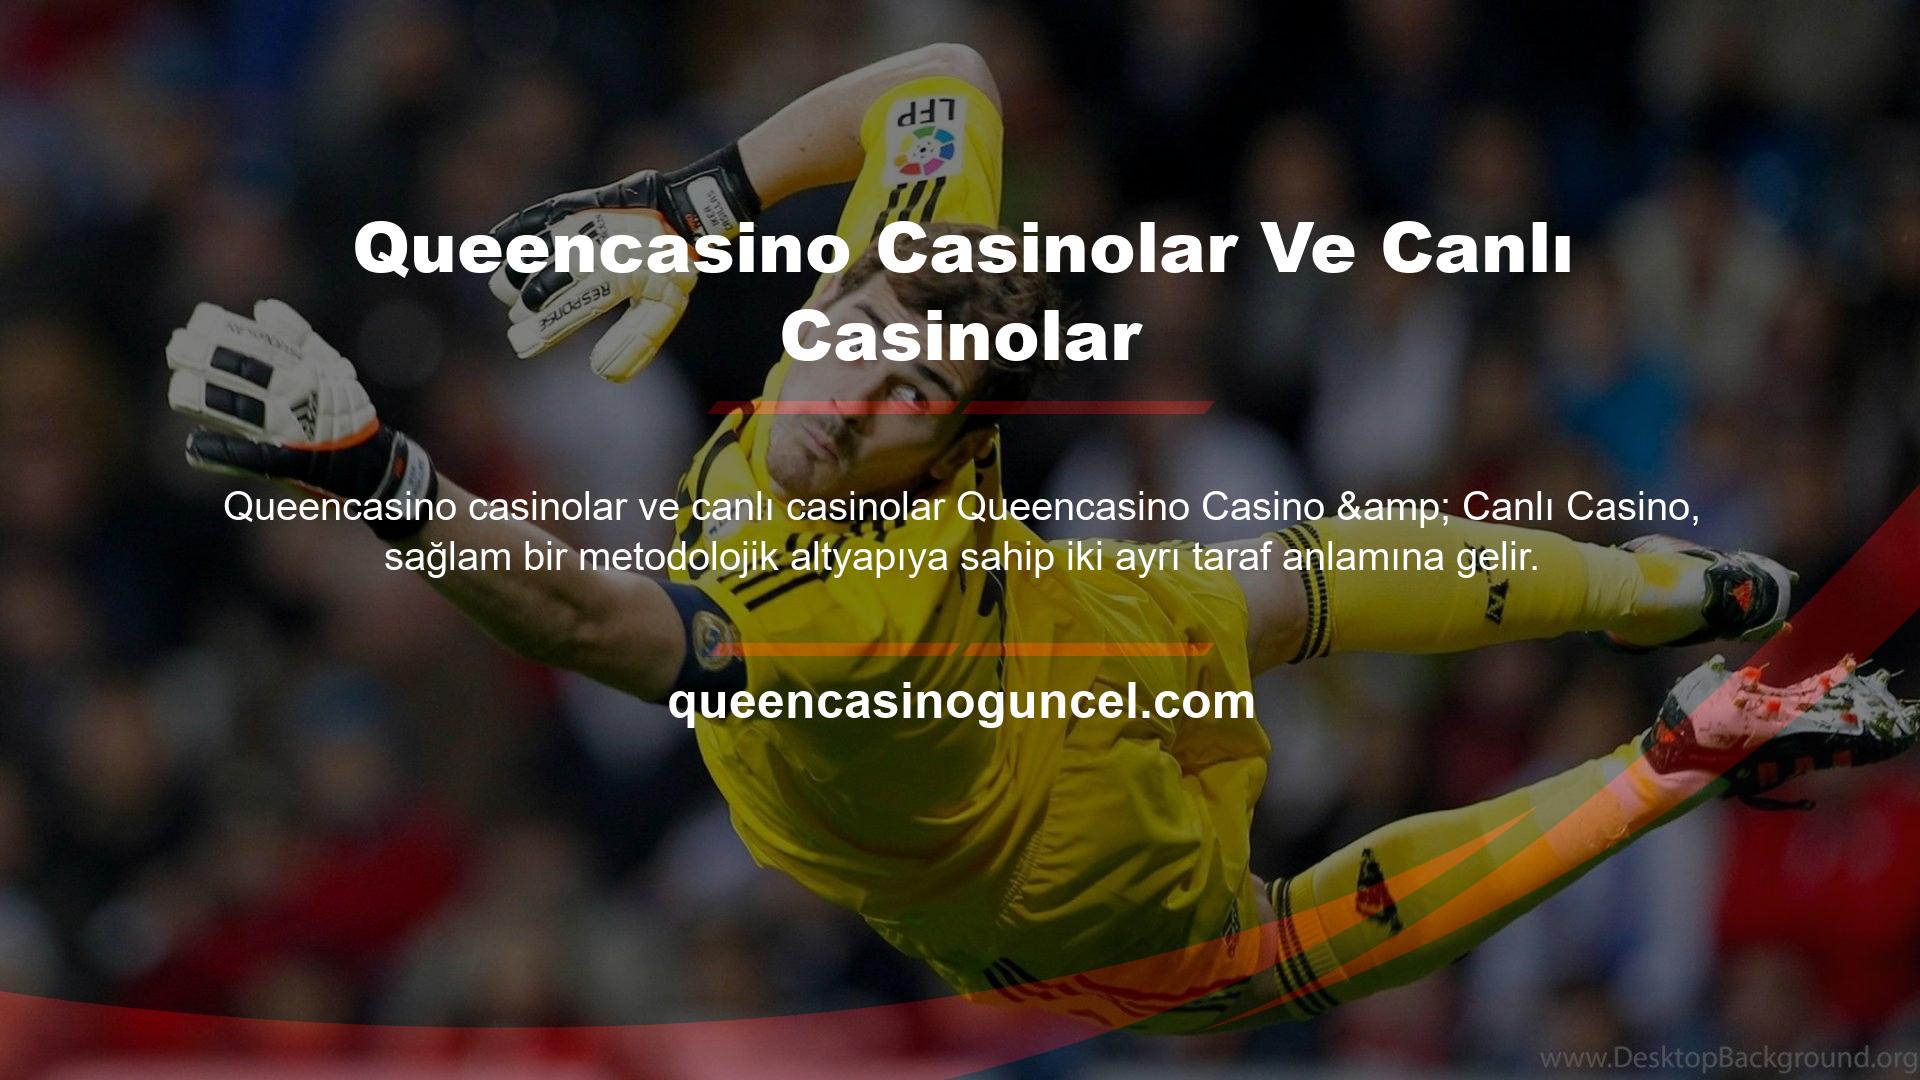 Queencasino casinolar ve canlı casinolar